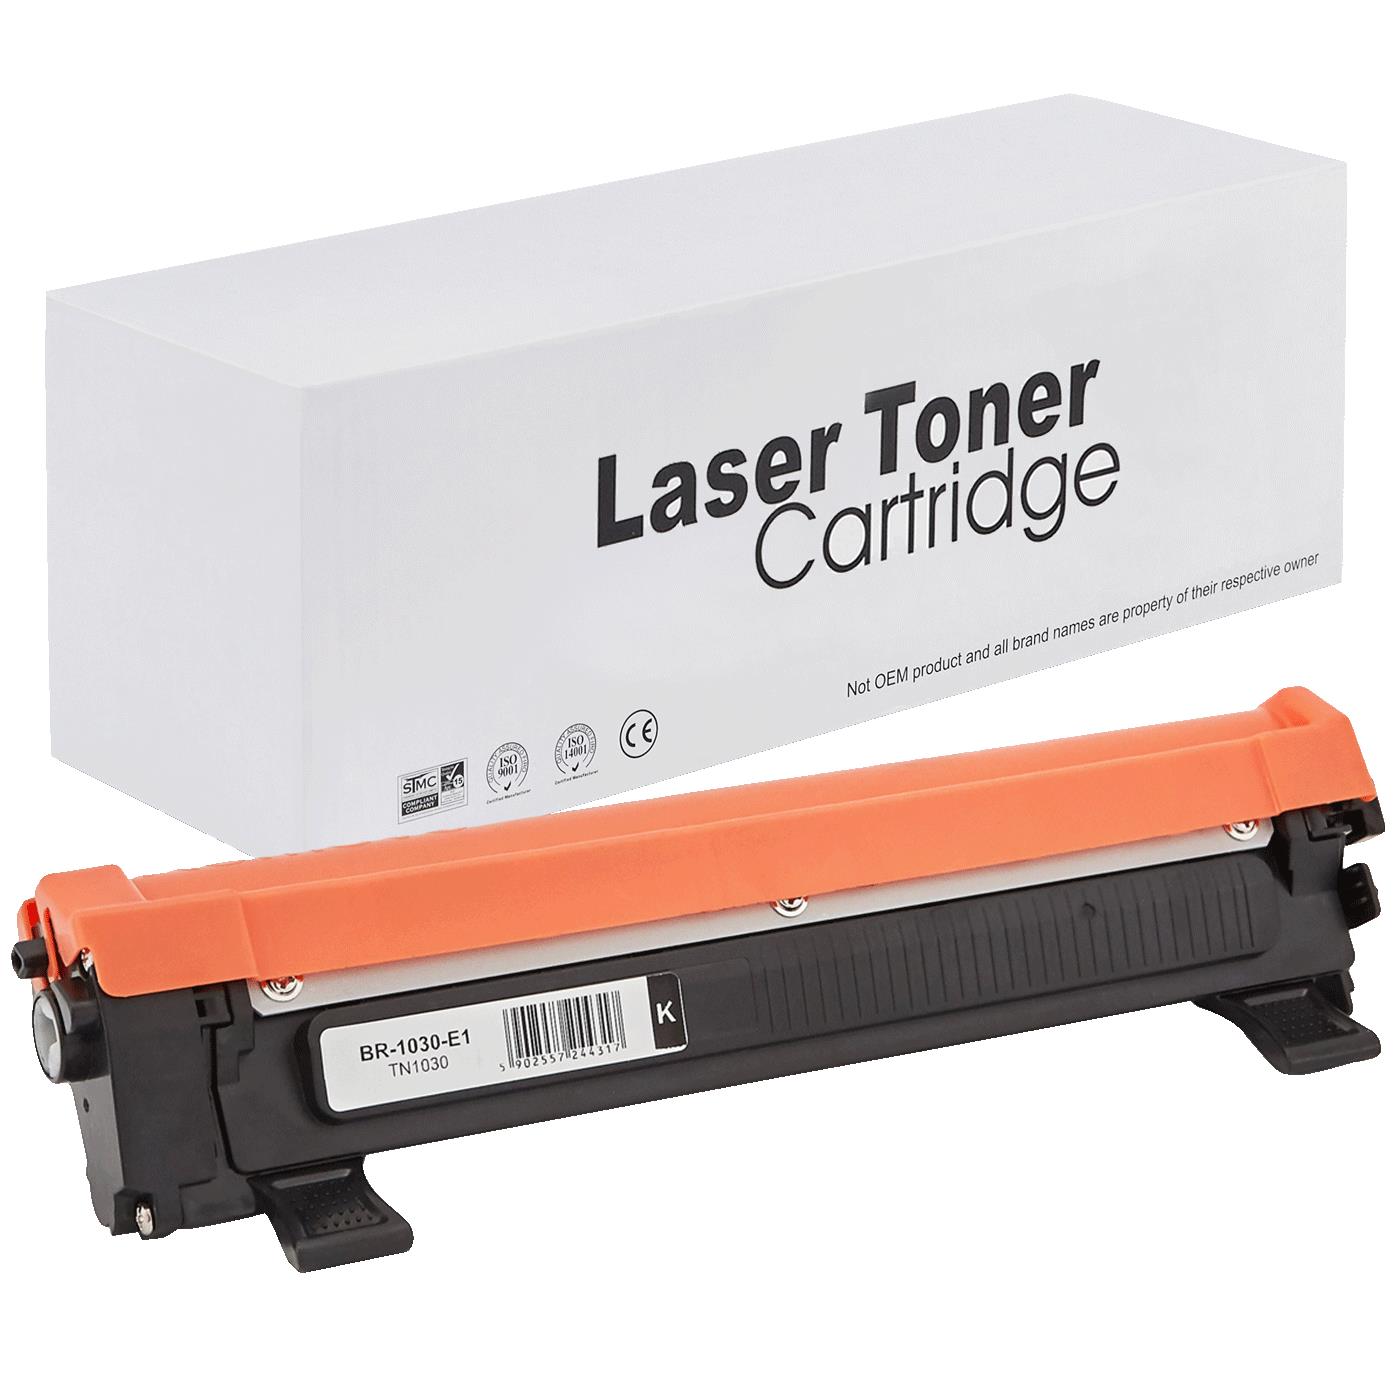 съвместима тонер касета за принтери и печатащи устройства на Brother 1910 Toner BR-1030 | TN1030 / TN1050 / TN-1030. Ниски цени, прецизно изпълнение, високо качество.